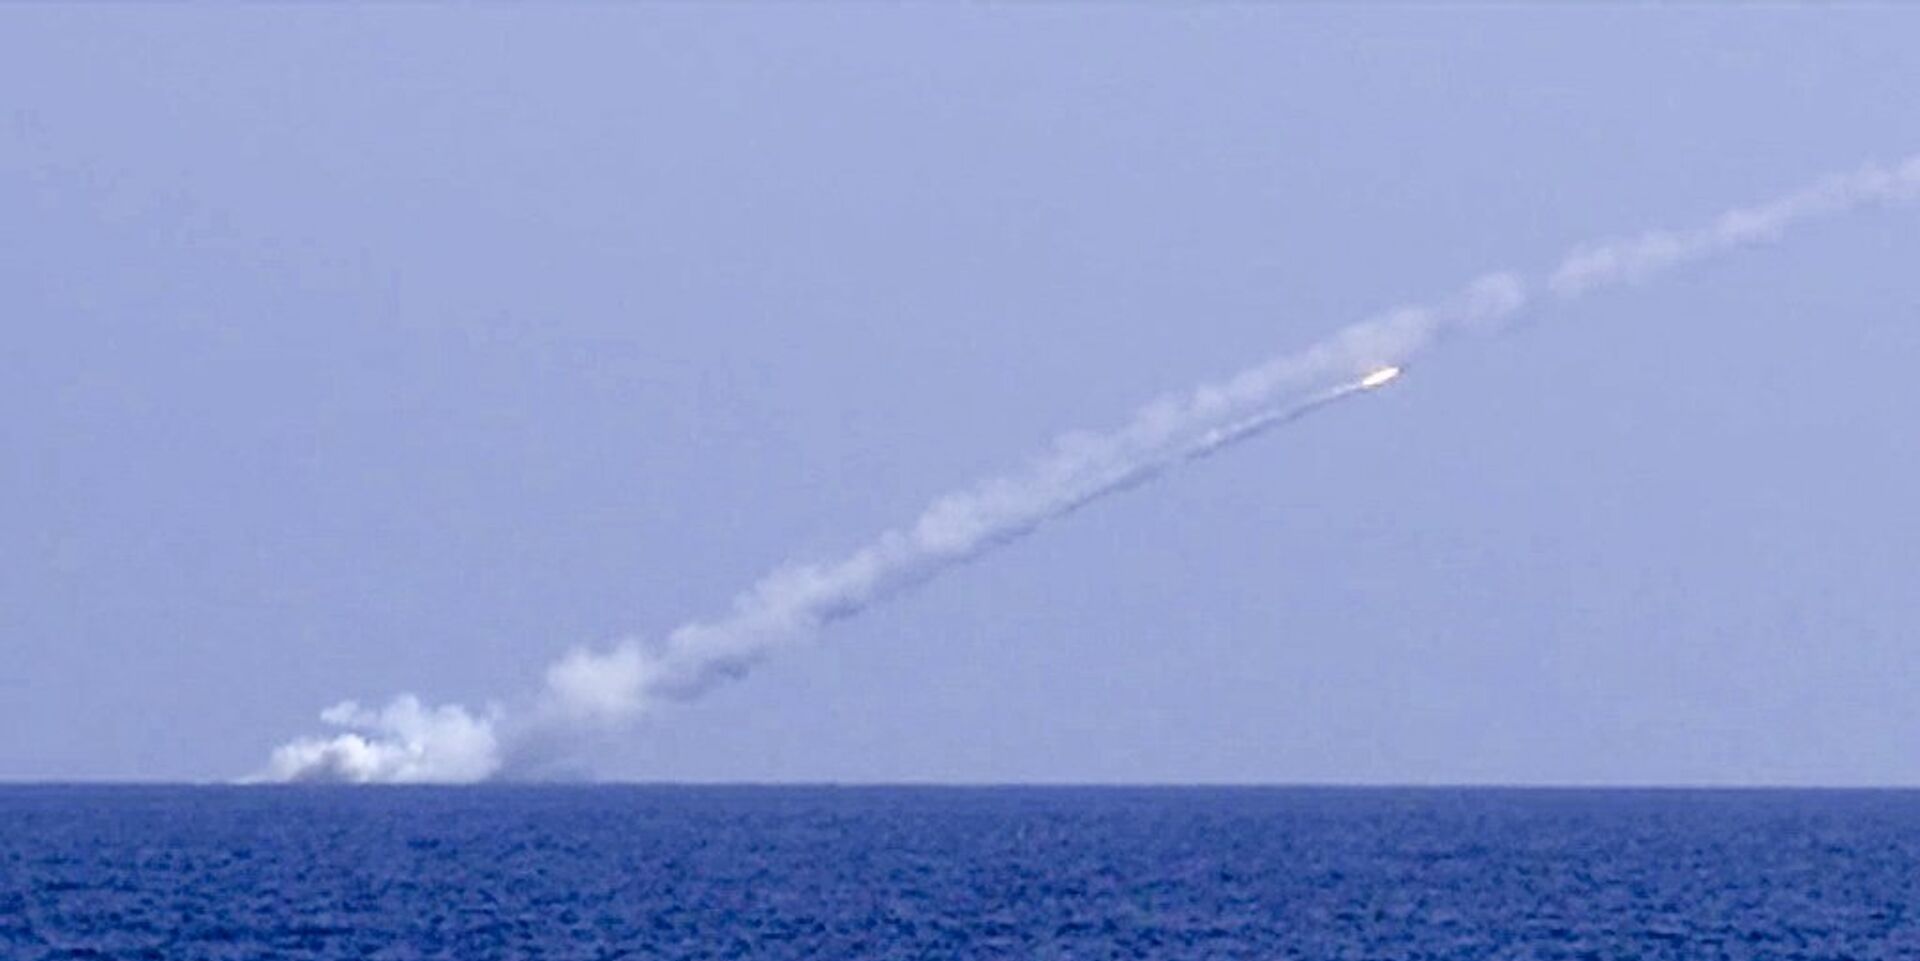 Запуск крылатой ракеты Калибр по объектам Исламского государства (ИГ, запрещена в РФ) в Сирии. 14 сентября 2017 - ИноСМИ, 1920, 31.10.2022